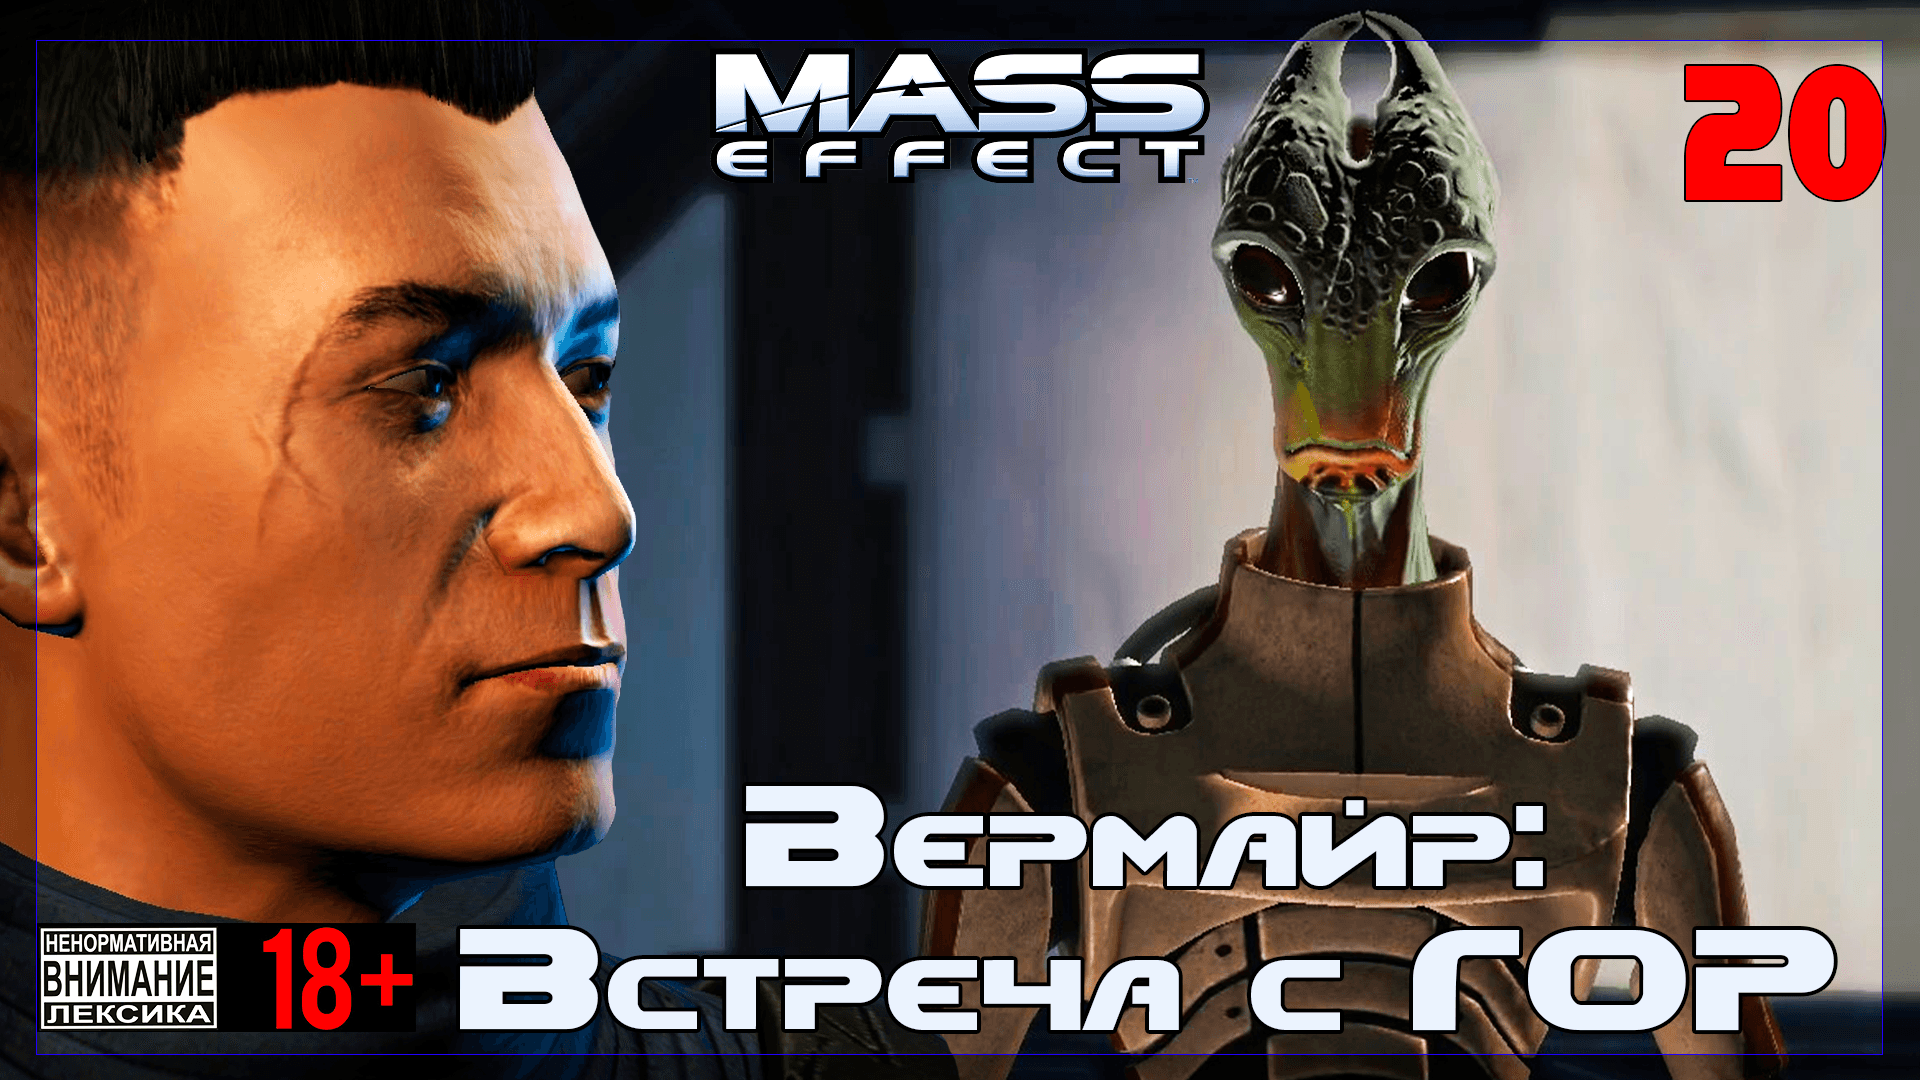 ? Mass Effect / Original #20 Вермайр: Встреча с ГОР